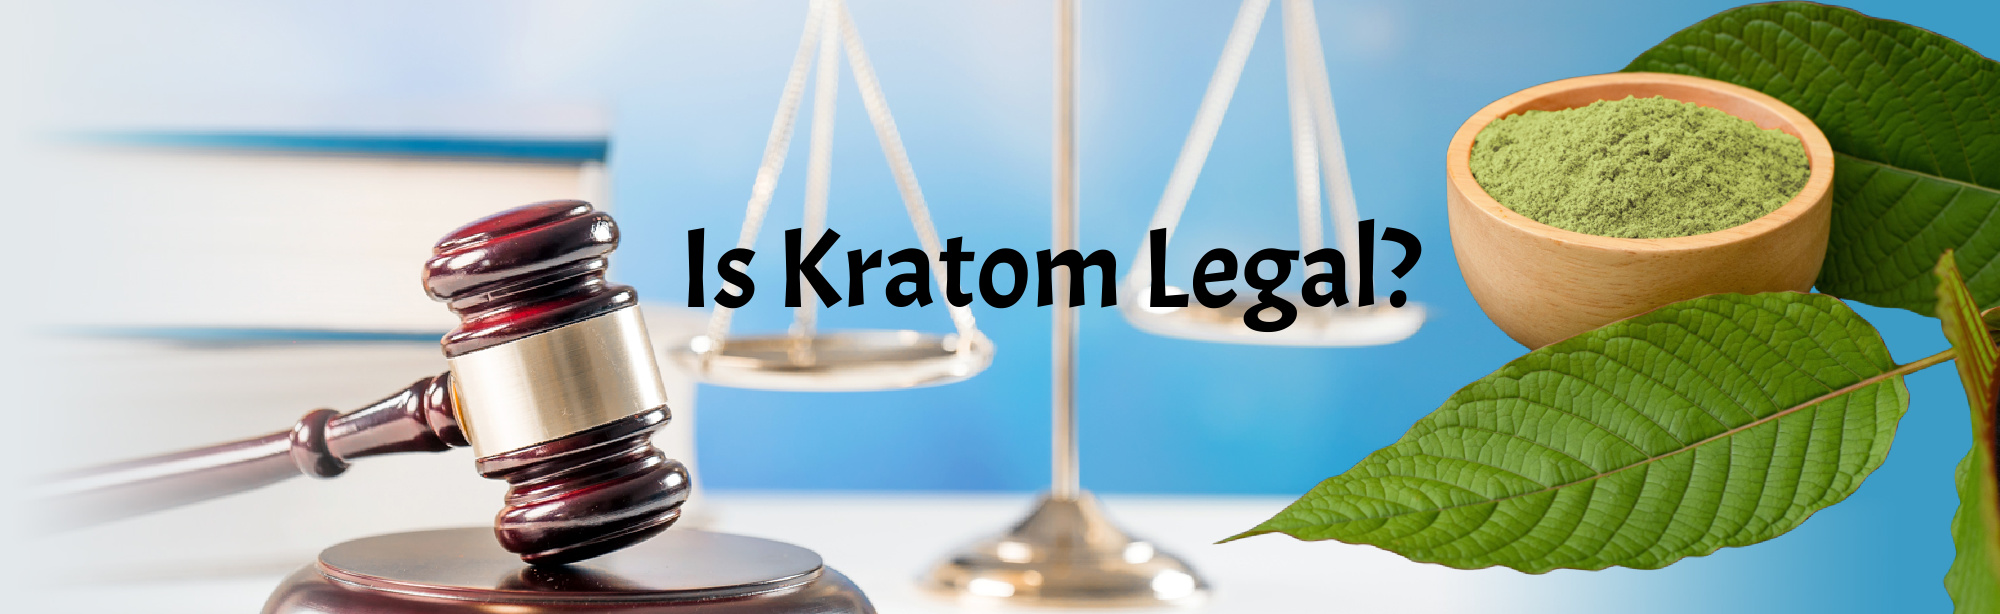 image of is kratom legal